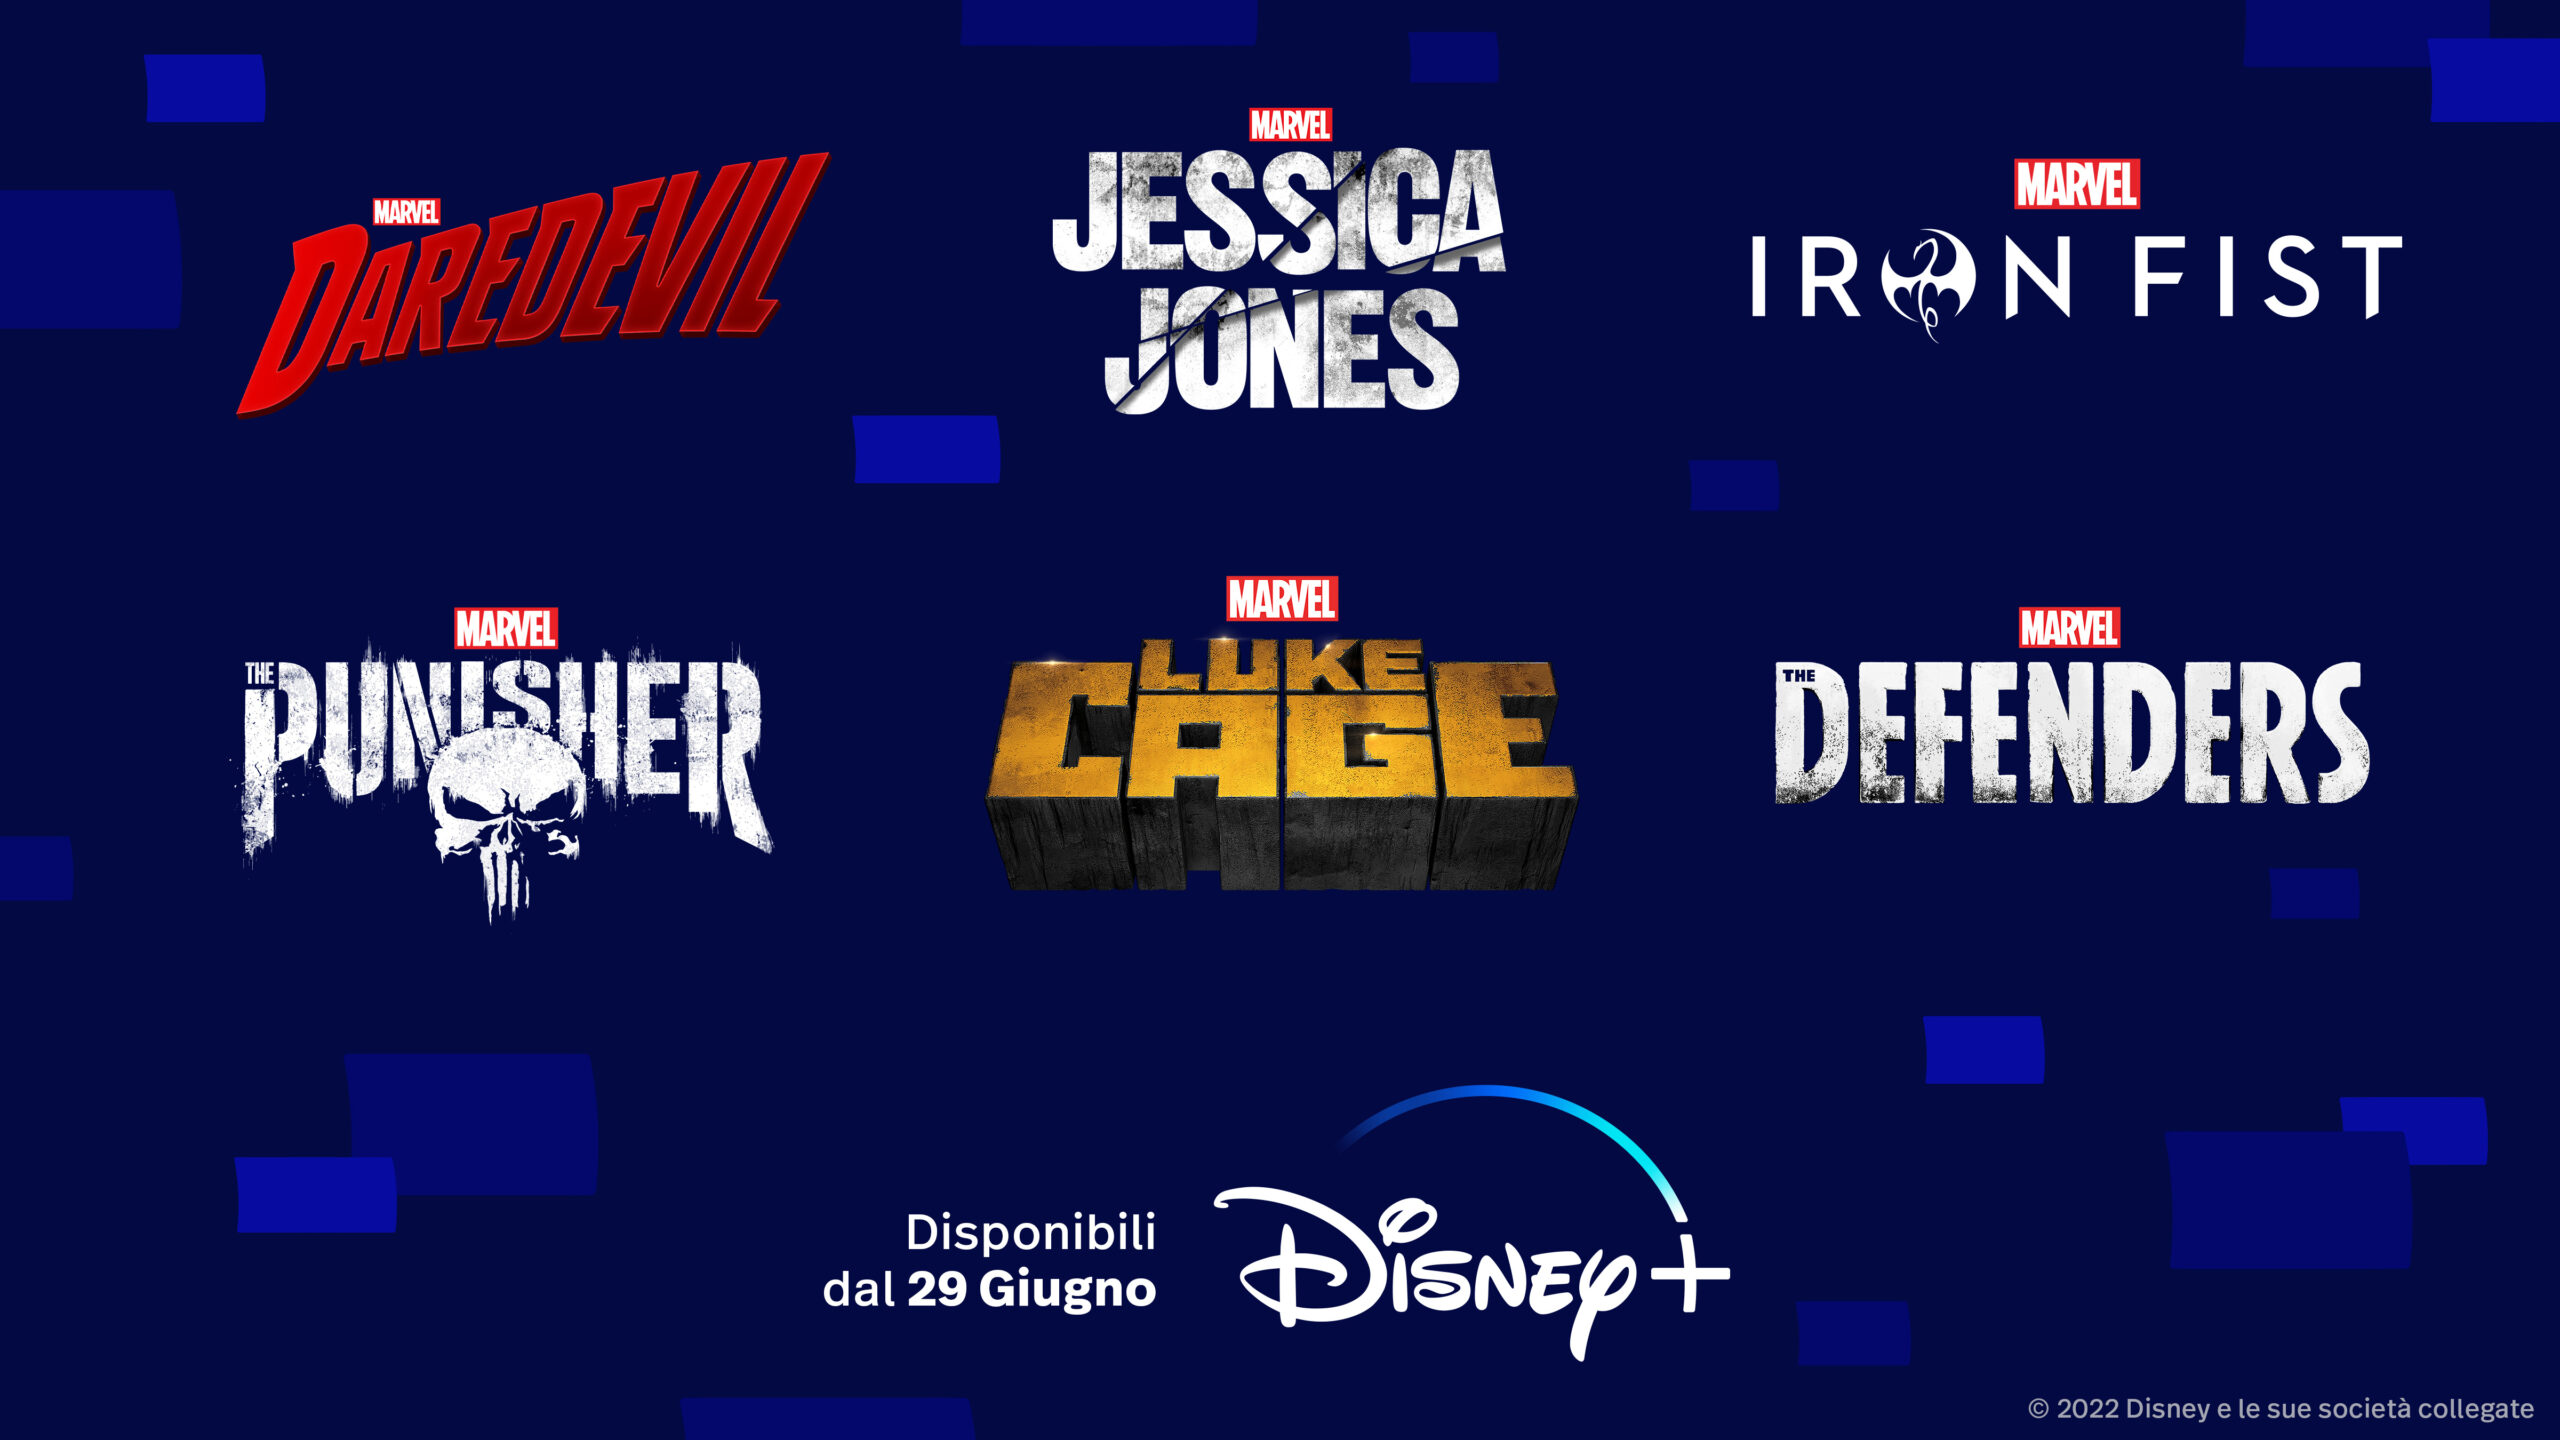 Le serie live-action Marvel Daredevil, Jessica Jones, Luke Cage, Iron Fist, The Defenders e The Punisher su Disney+ dal 29 Giugno 2022